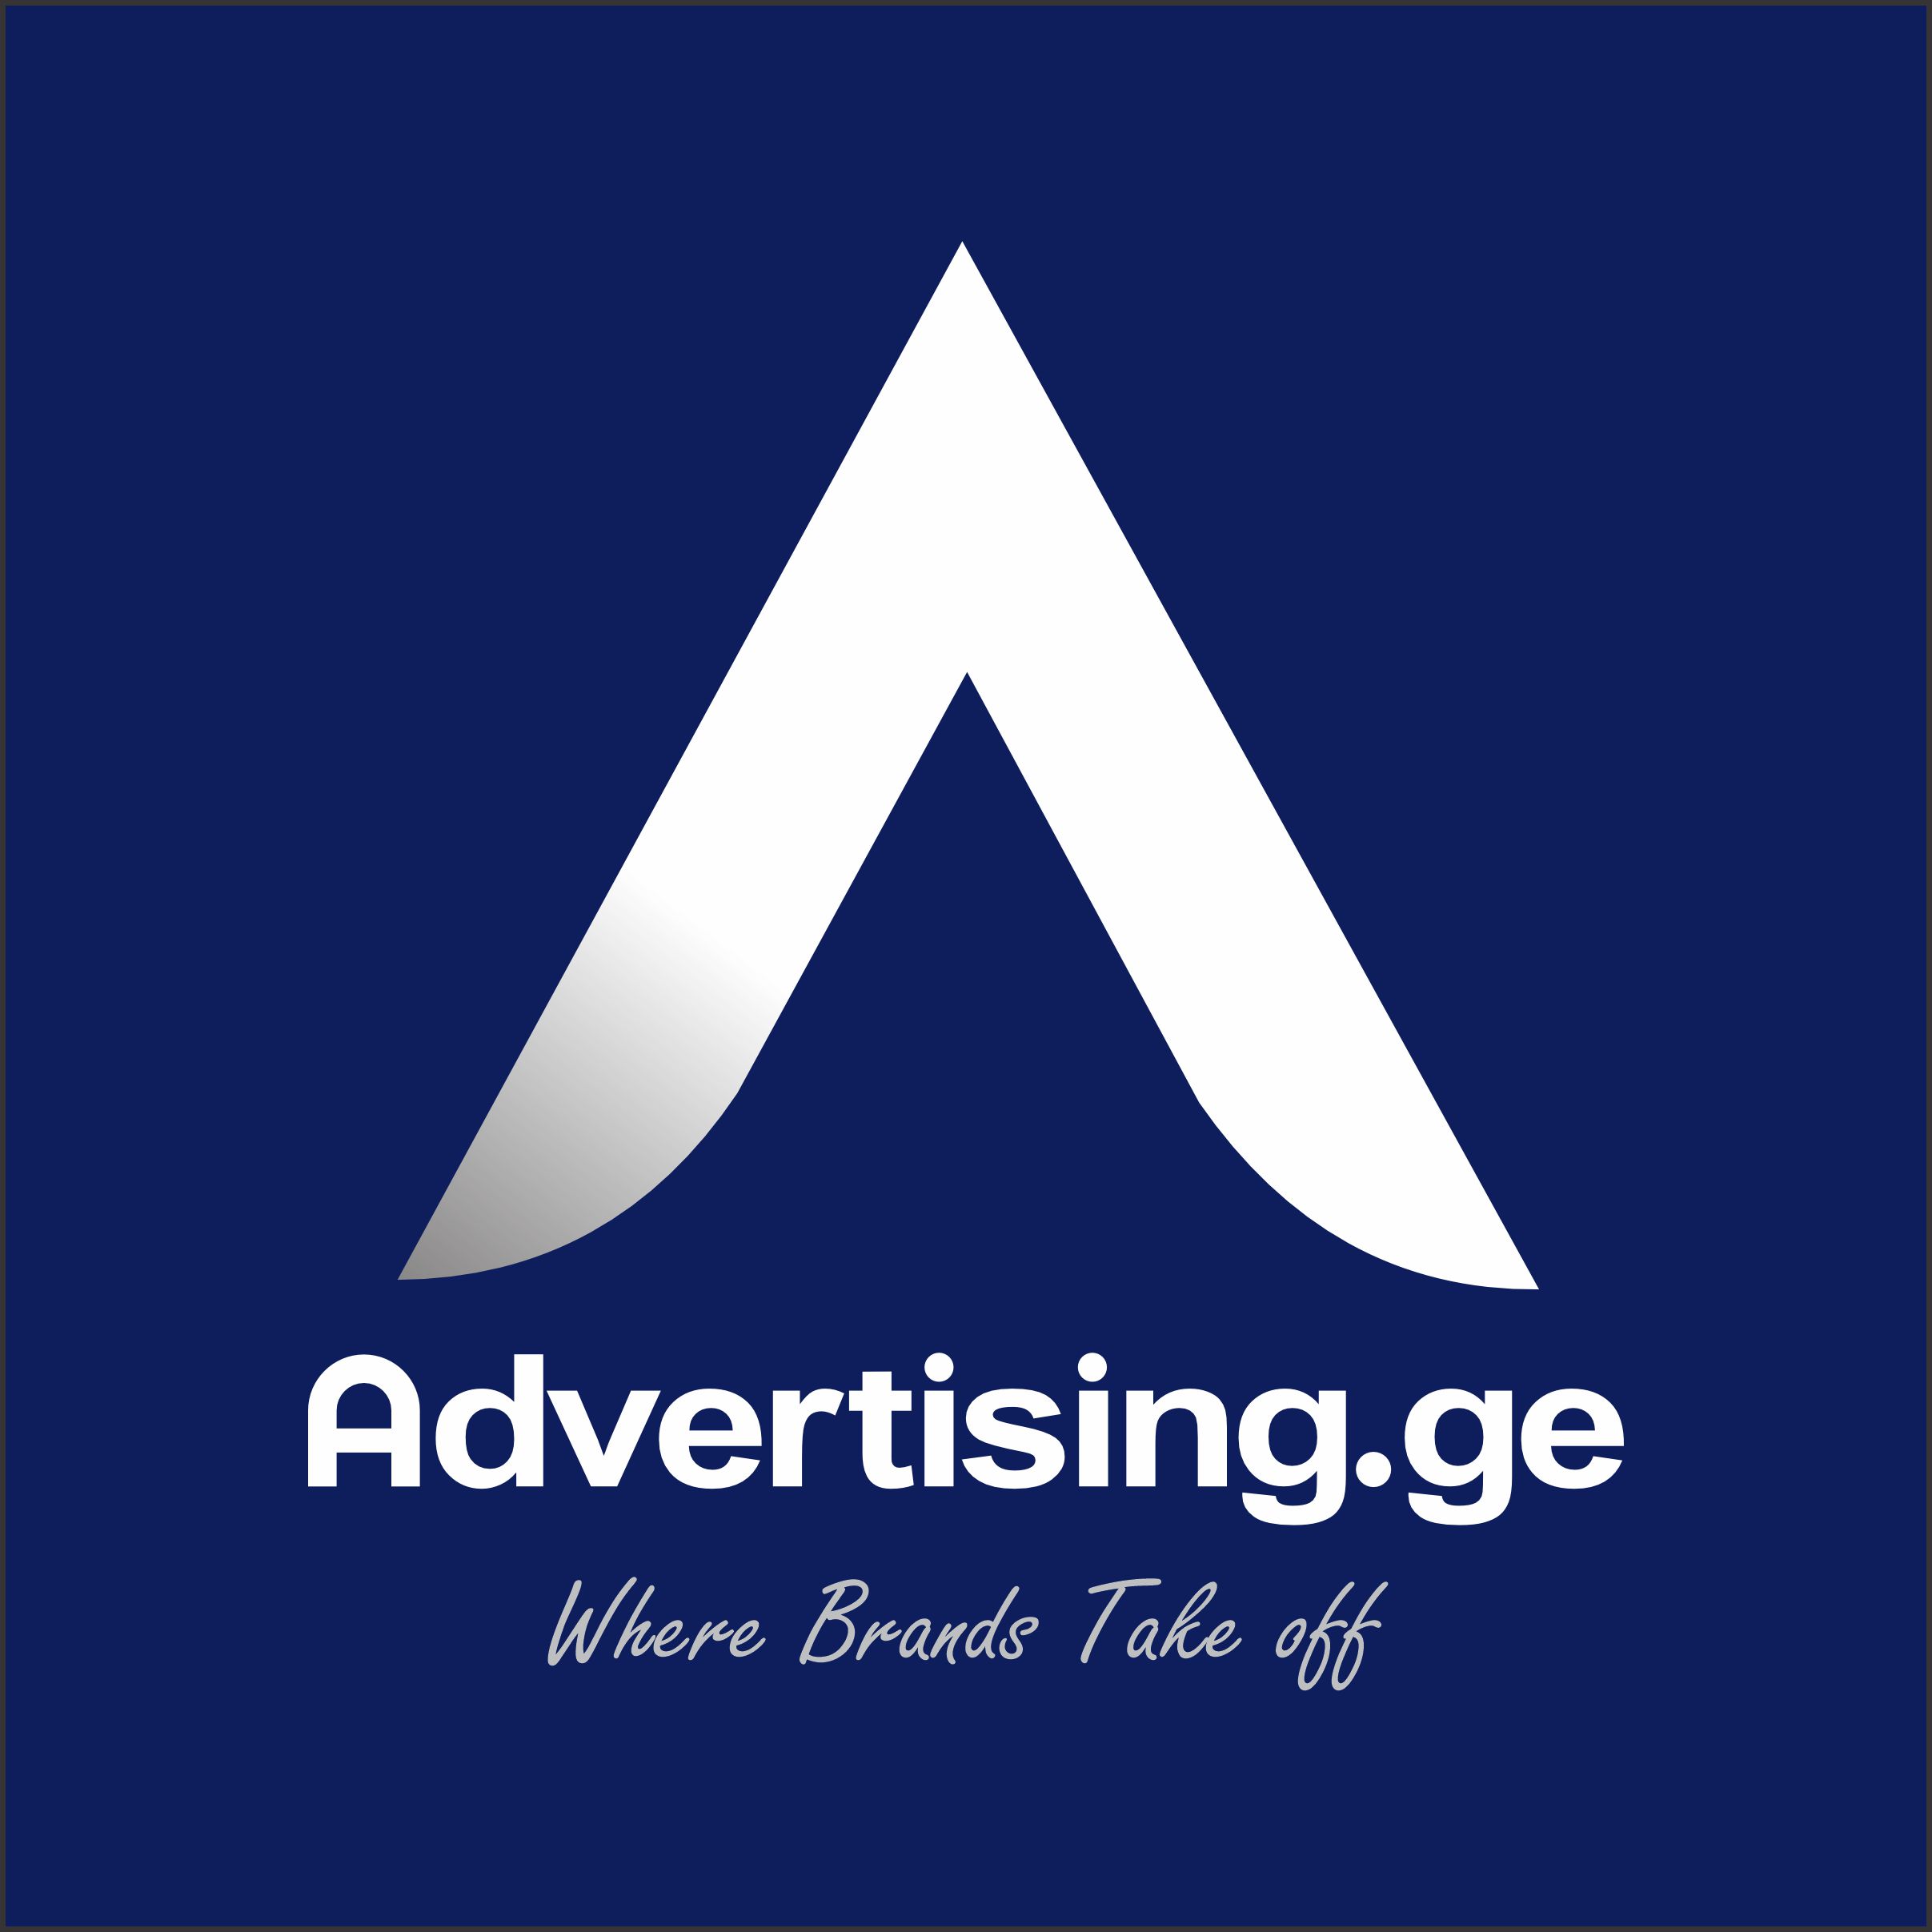 Advertising.ge